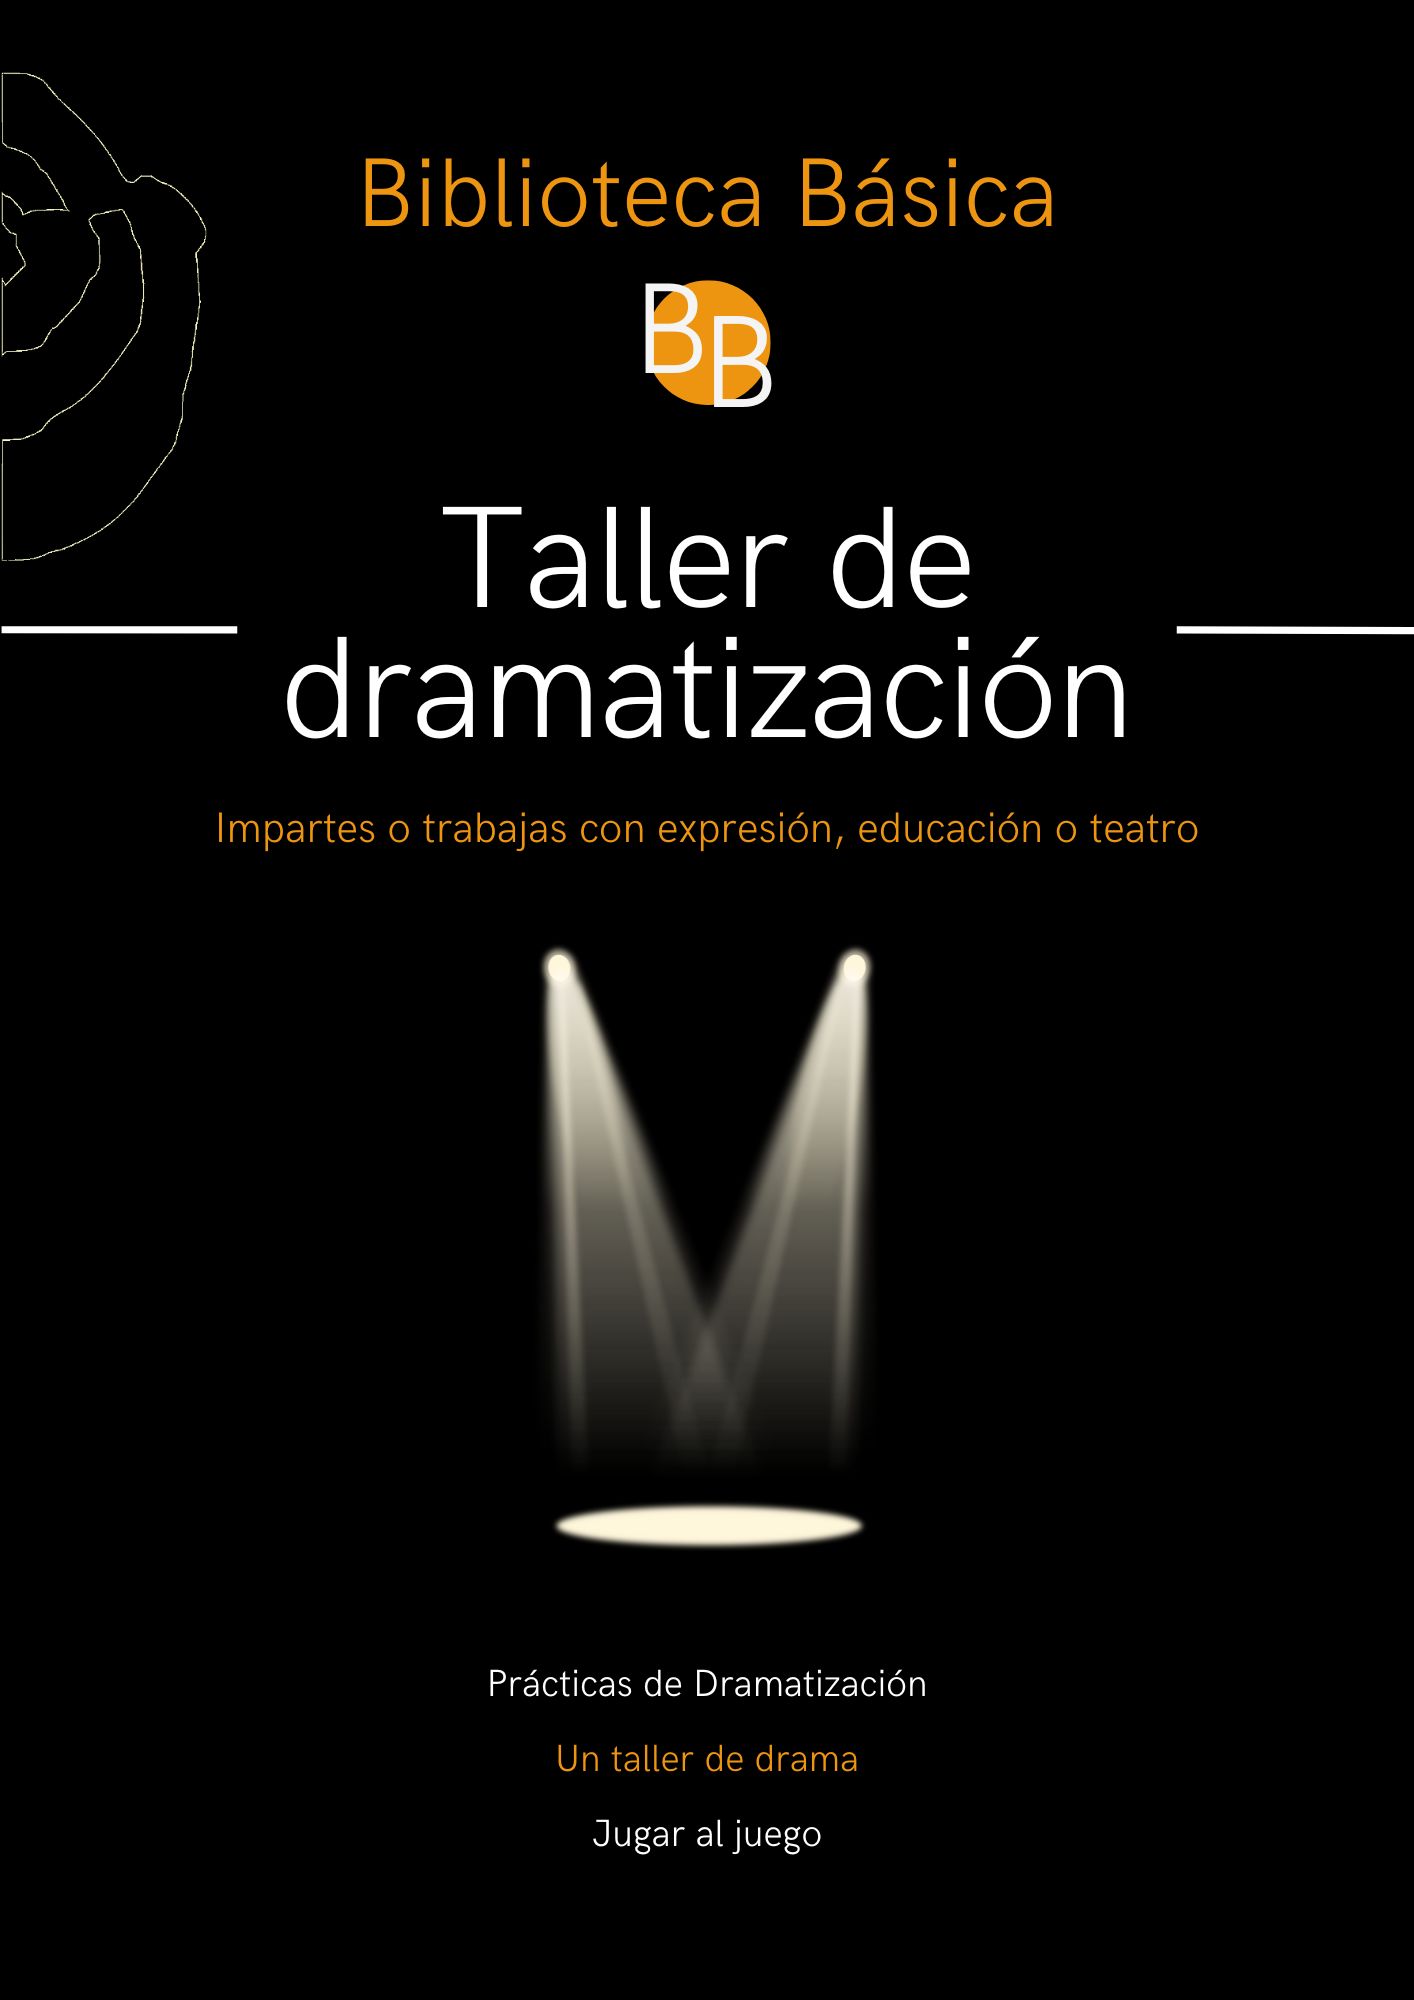 BB TALLER DE DRAMATIZACIÓN